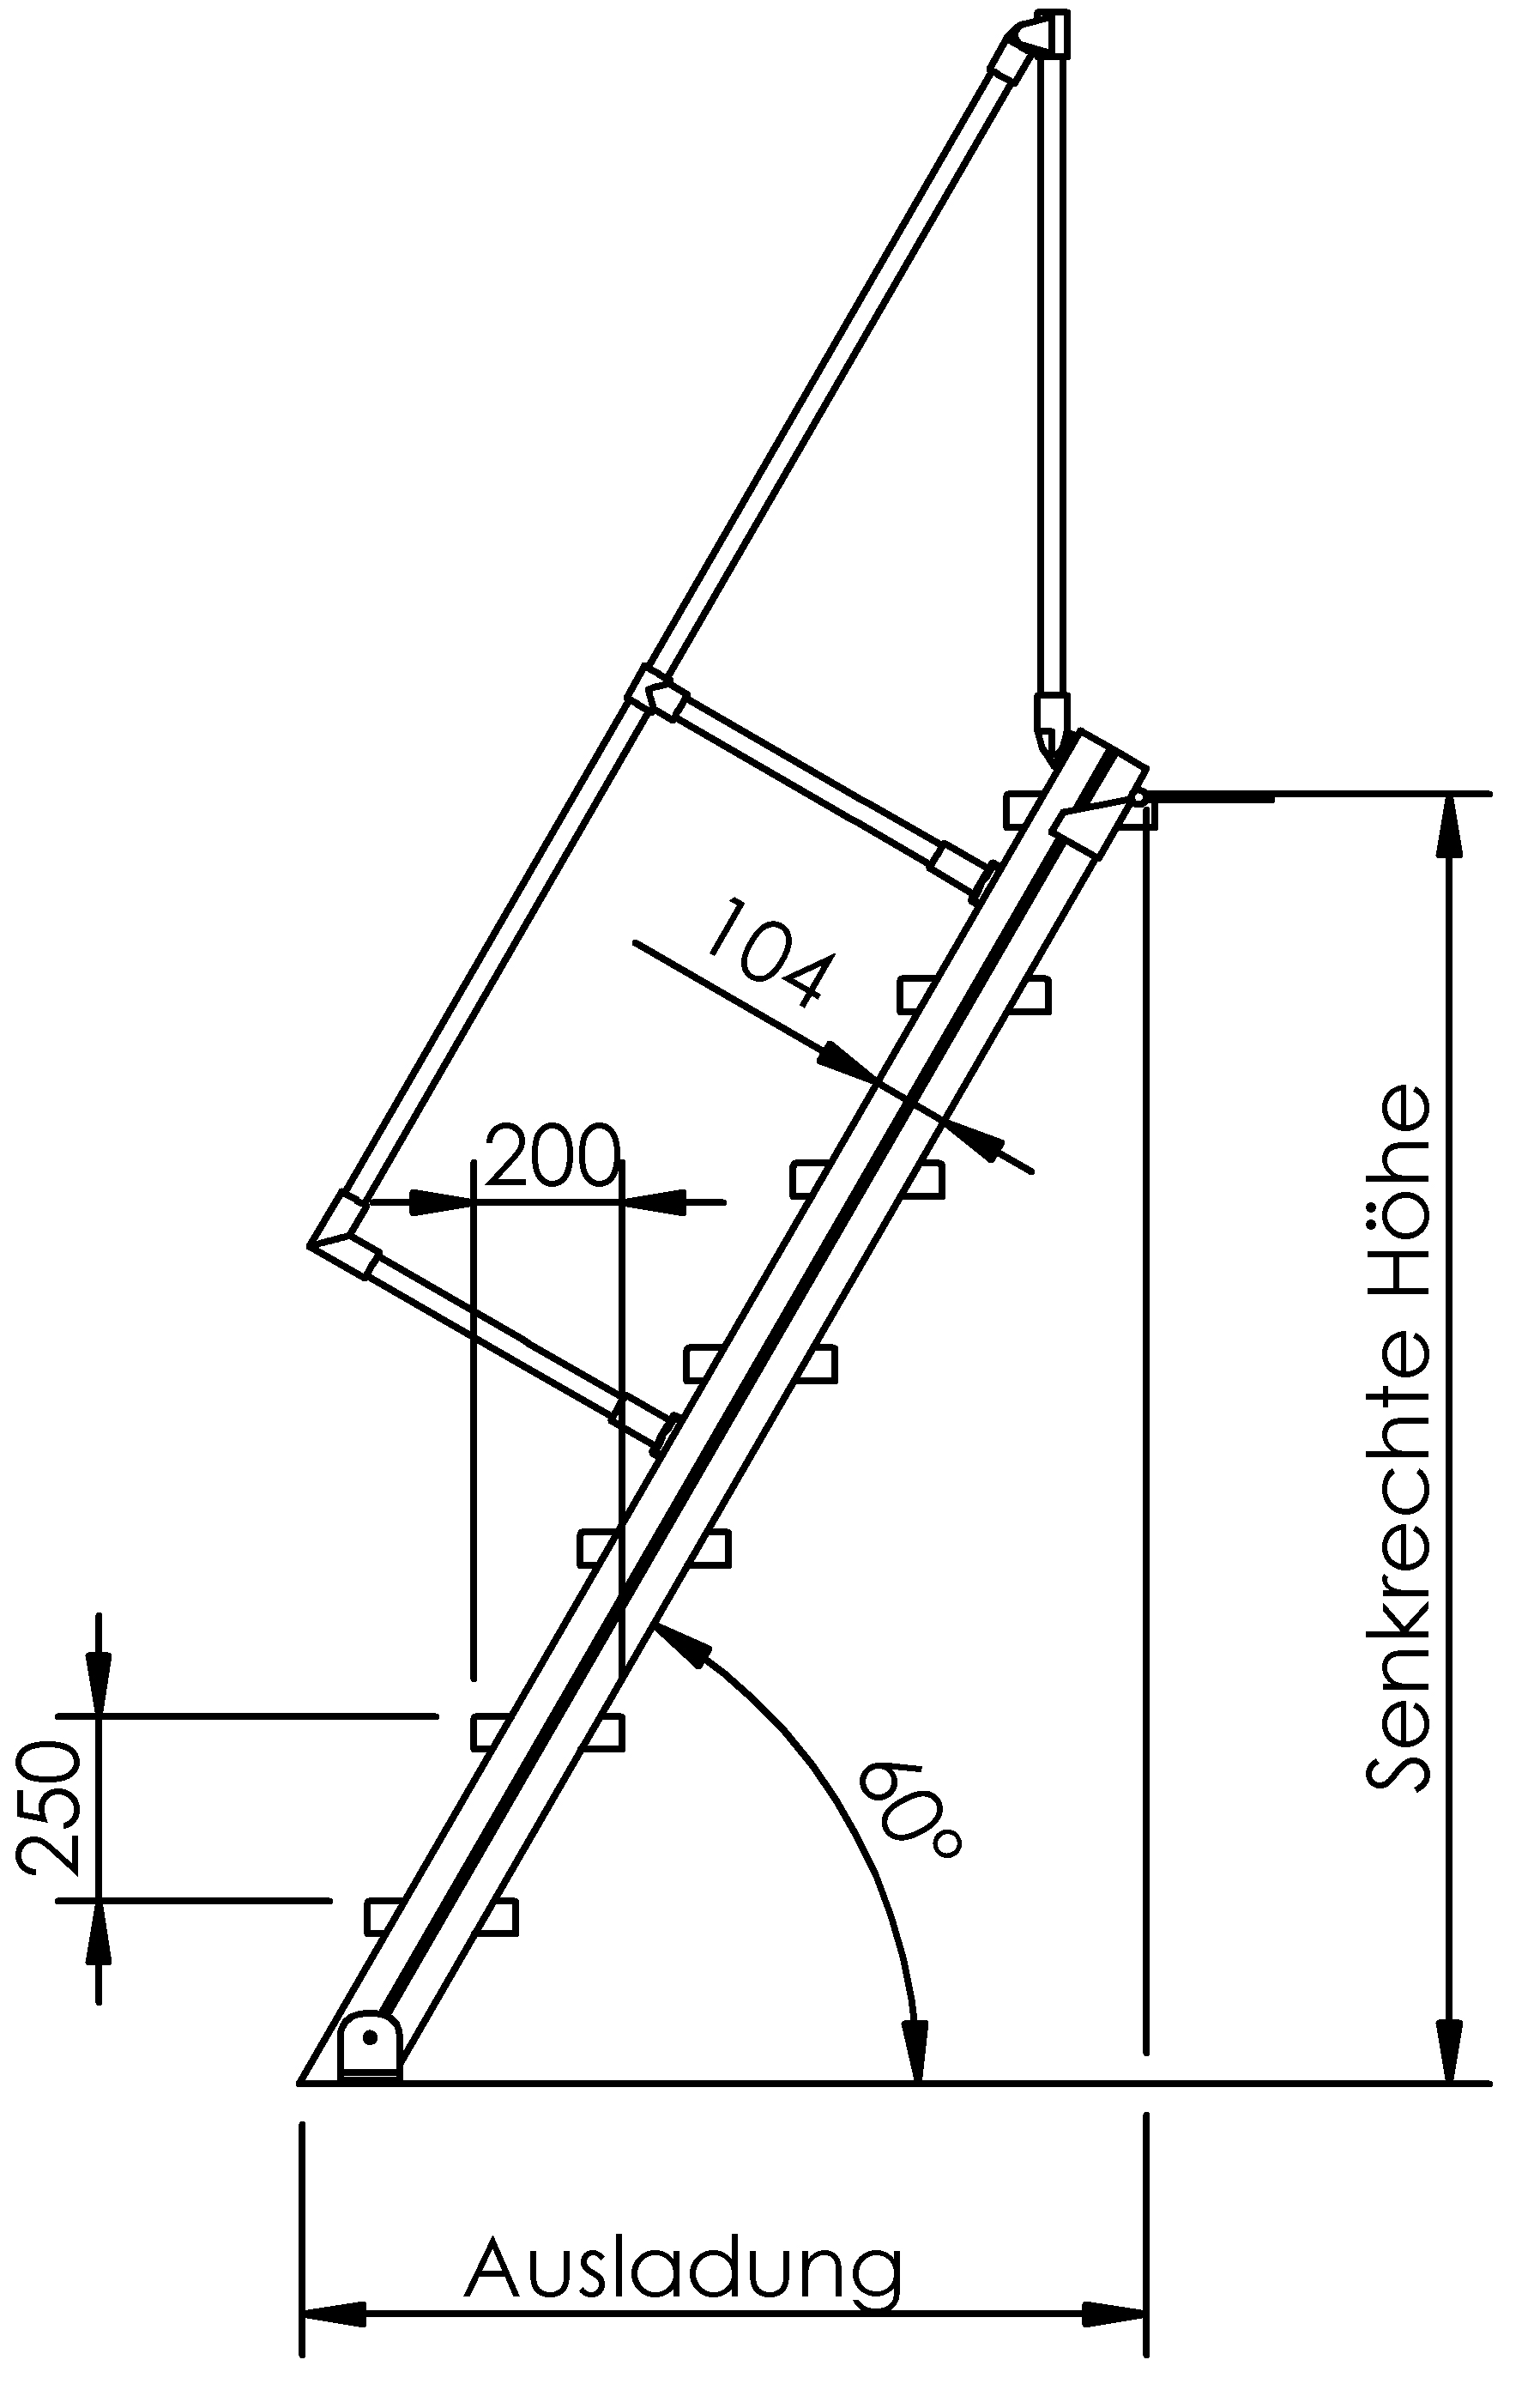 Selbstbautreppen, LW 1000mm, Stufen aus Stahl, Neigung 45°